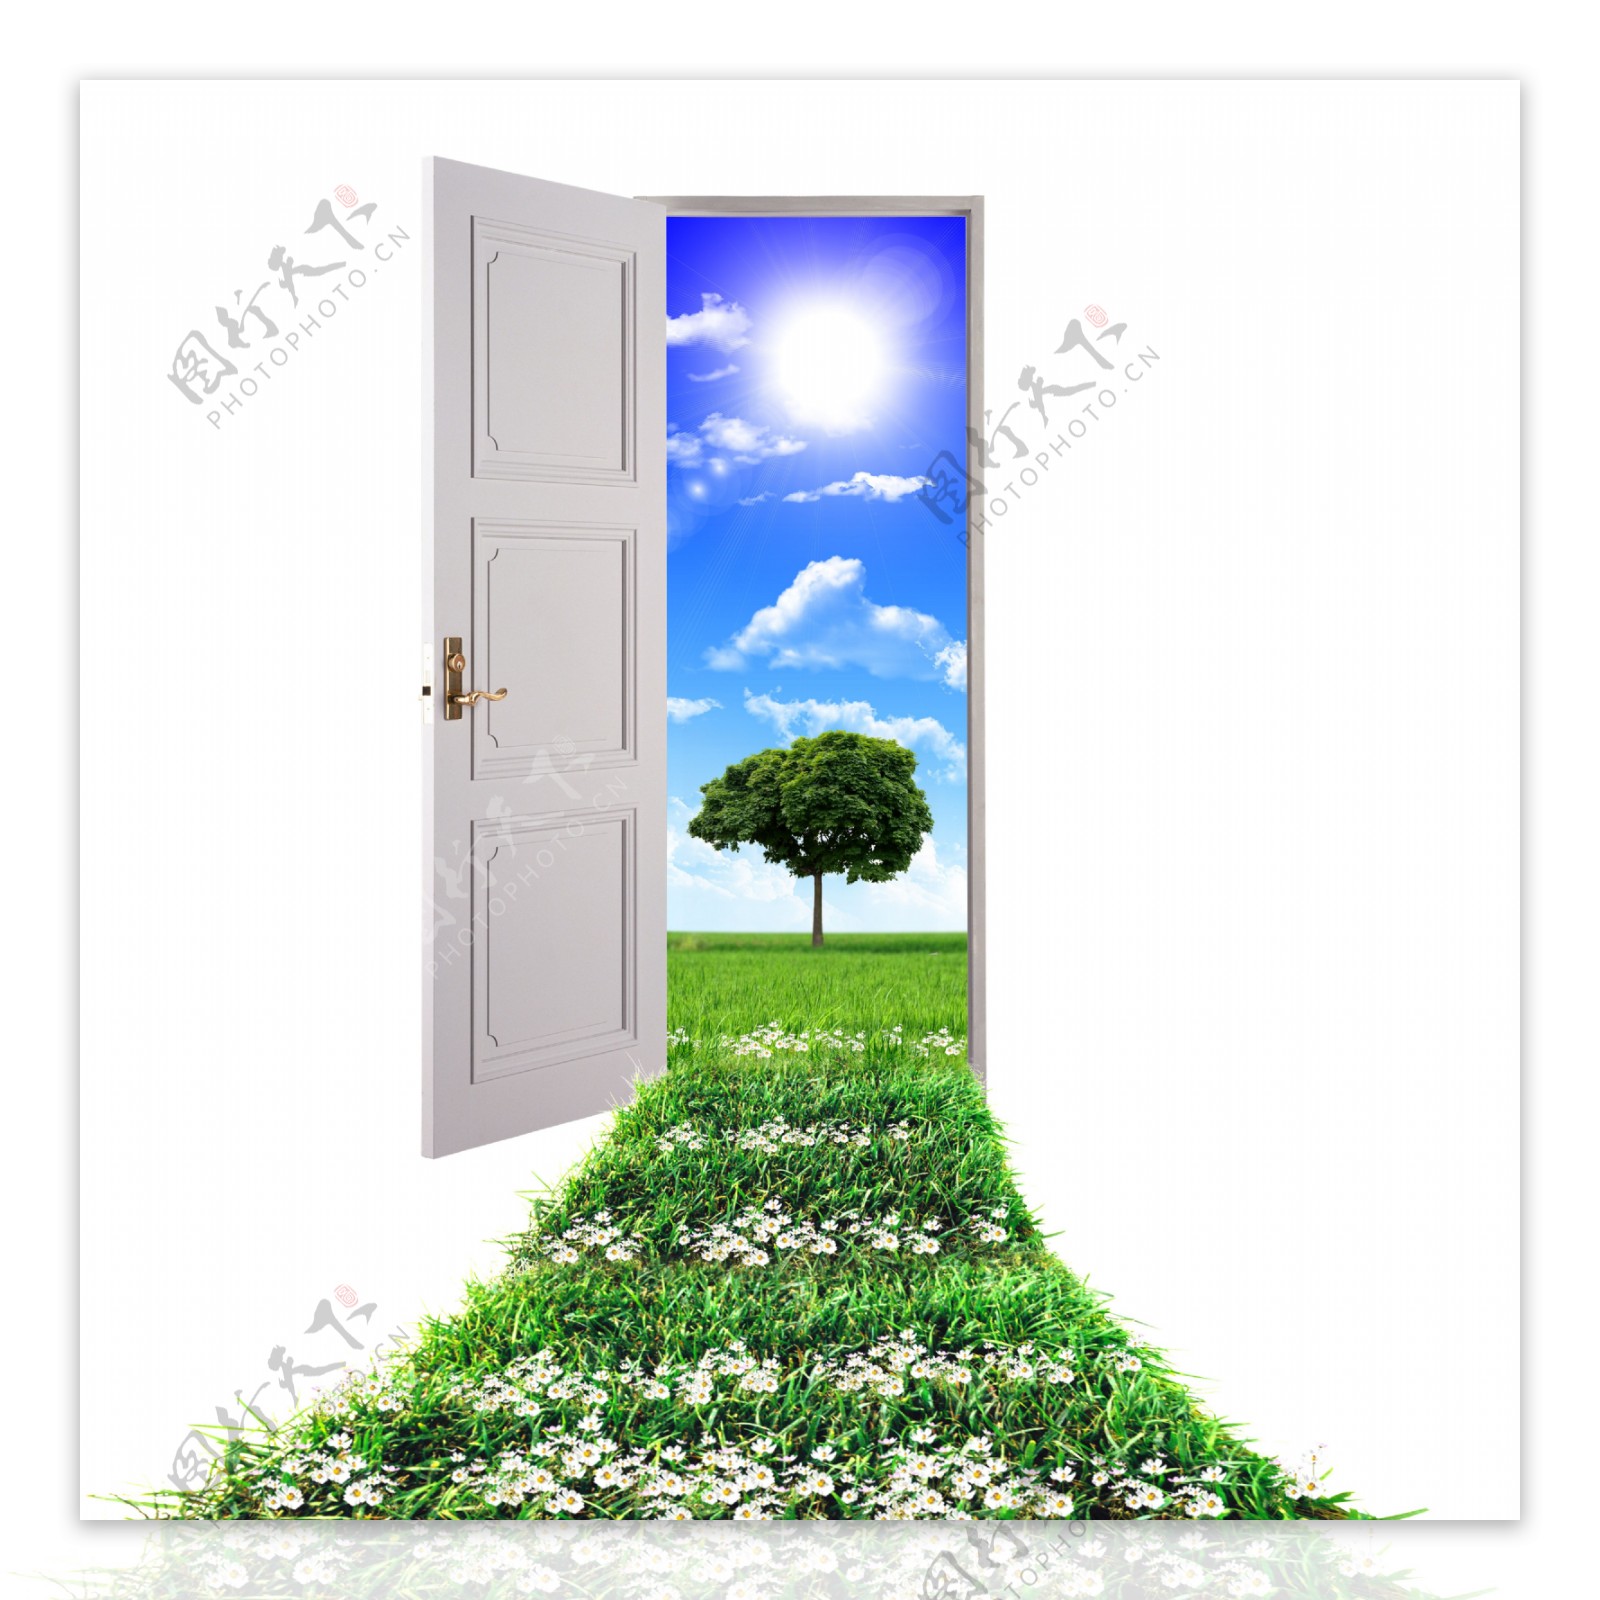 敞开的门与鲜花草地风景图片